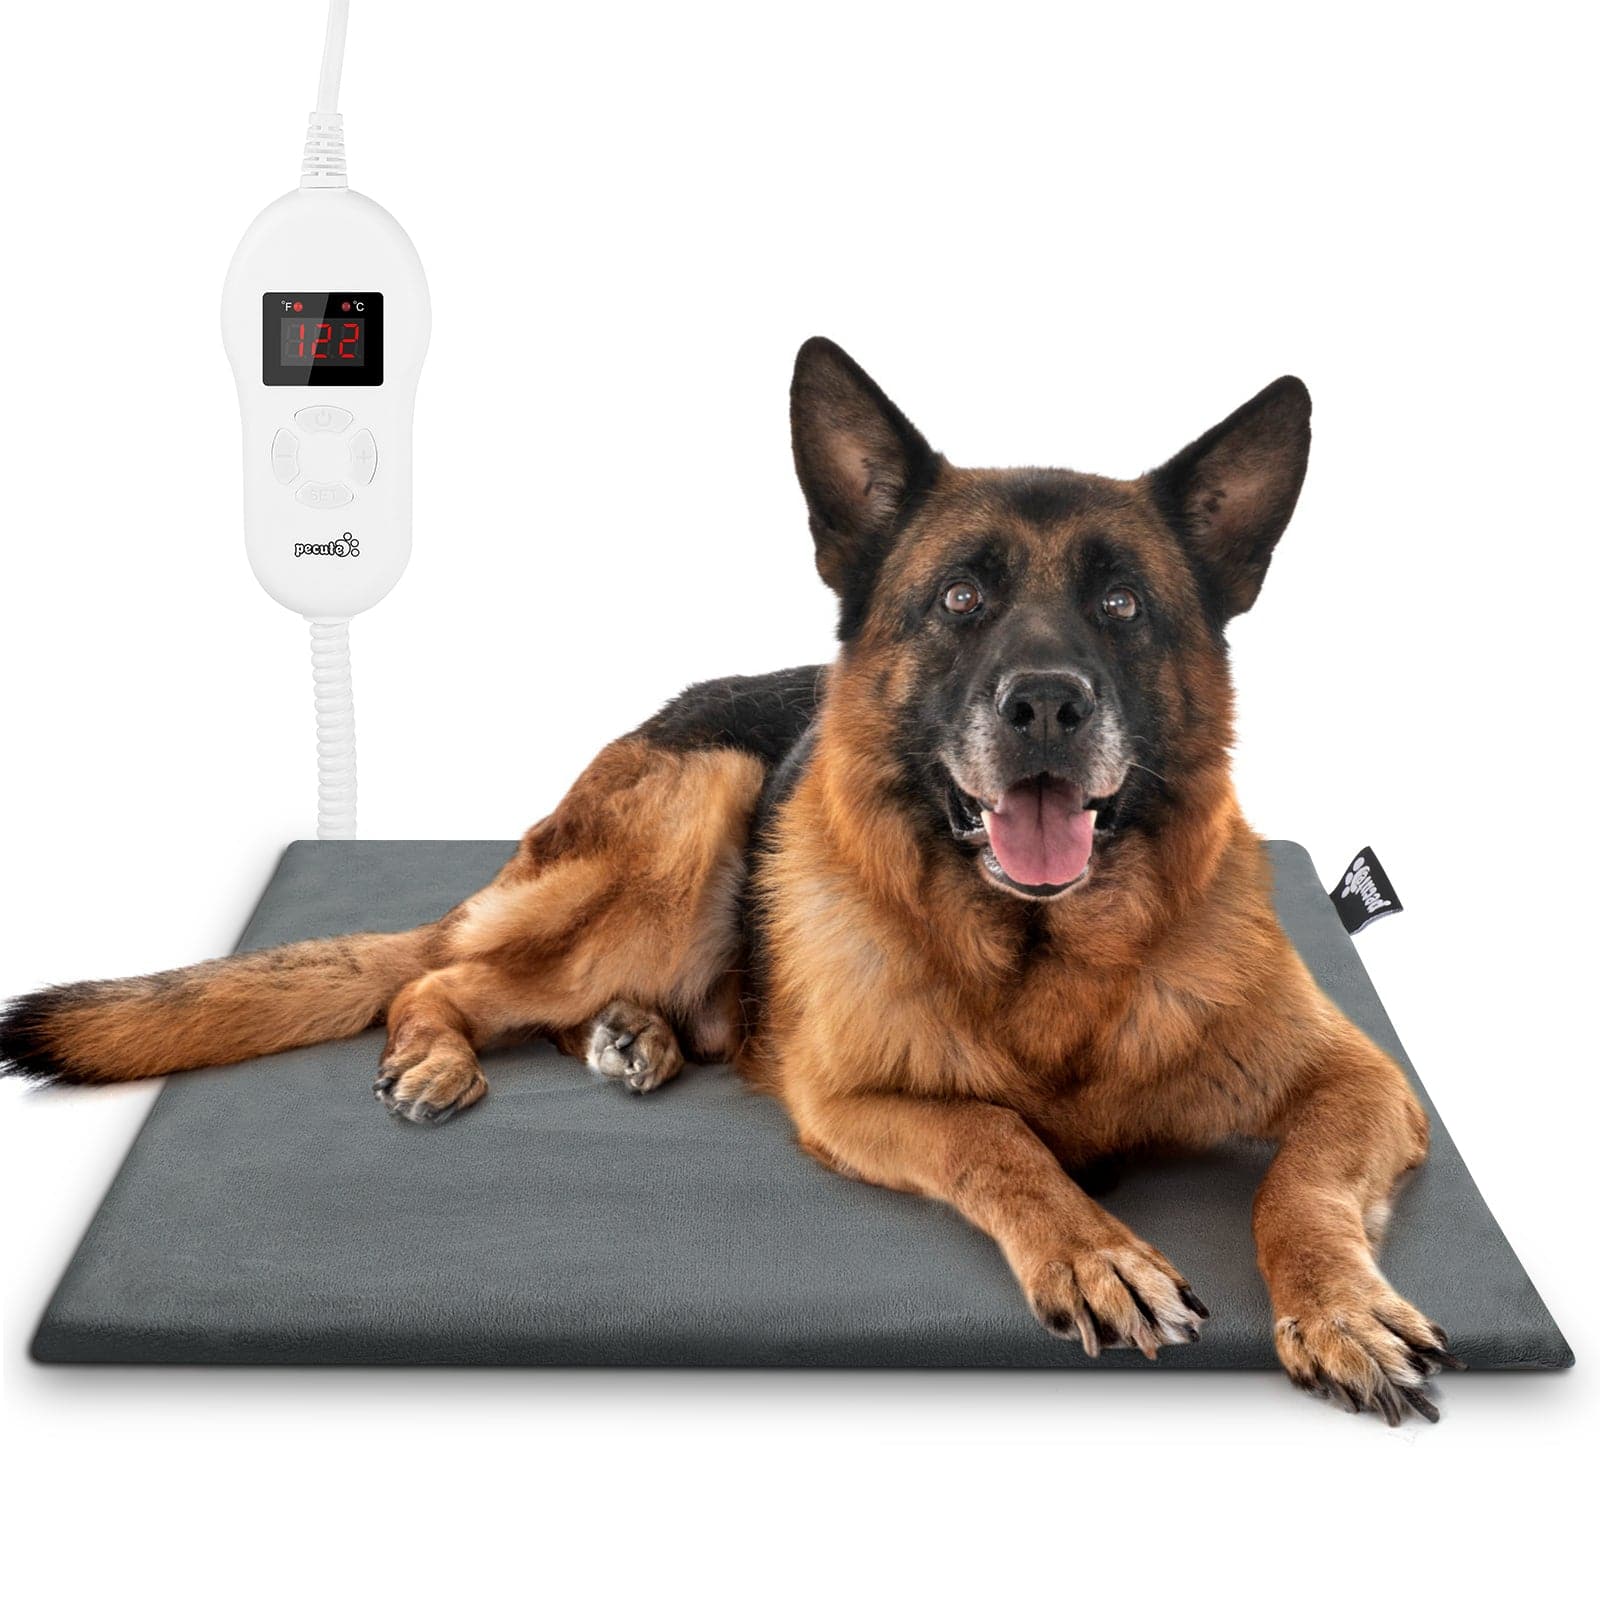 Pecute Pet Heating Pad 5 Adjustable Temperatures M.